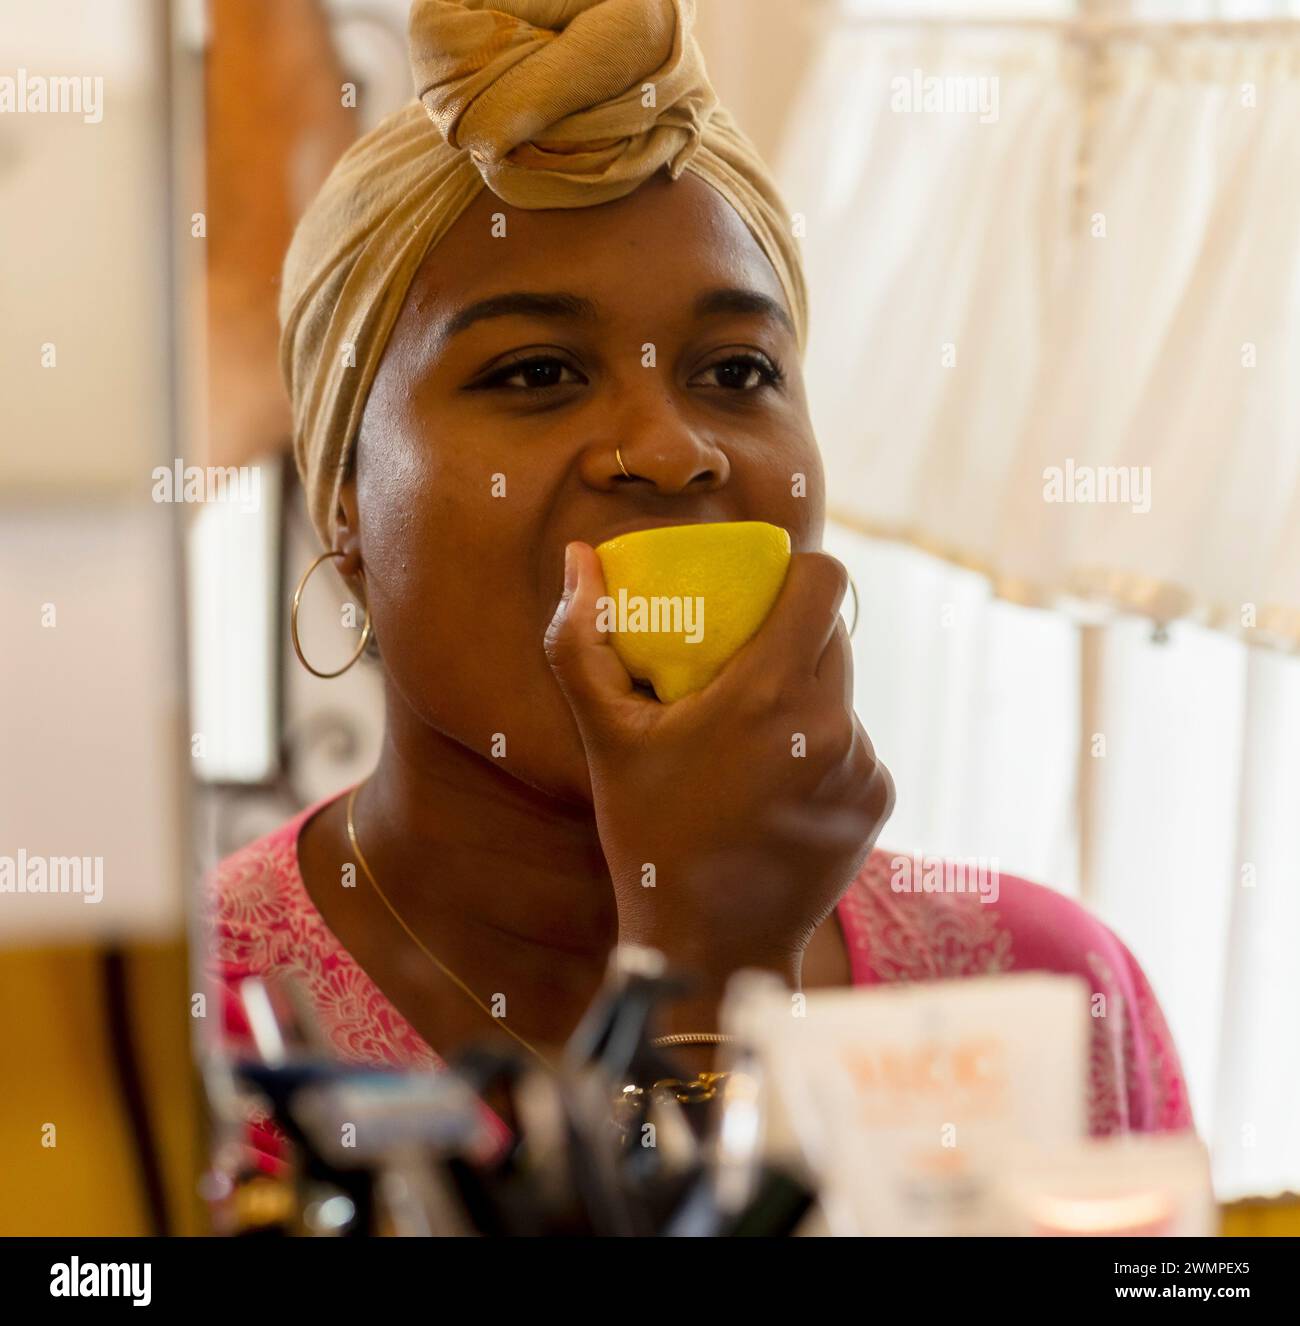 Una ragazza succhia un limone giallo davanti allo specchio. Si guarda e fa schifo. Foto Stock